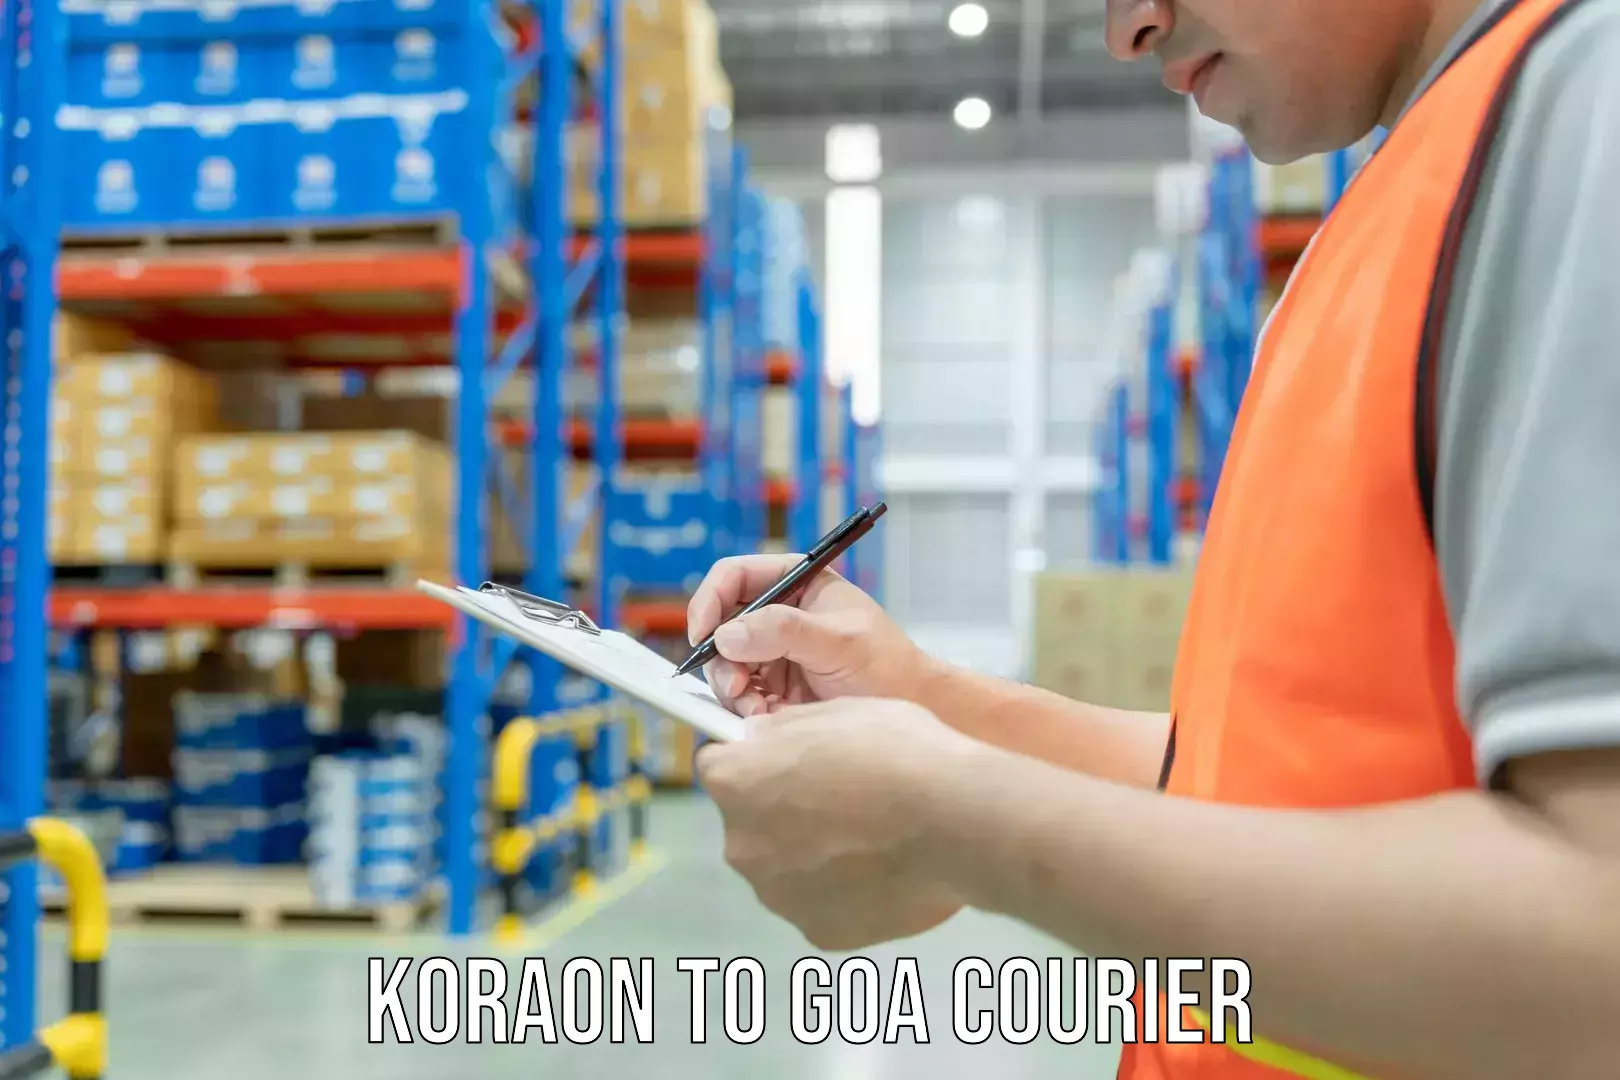 Professional packing services Koraon to Goa